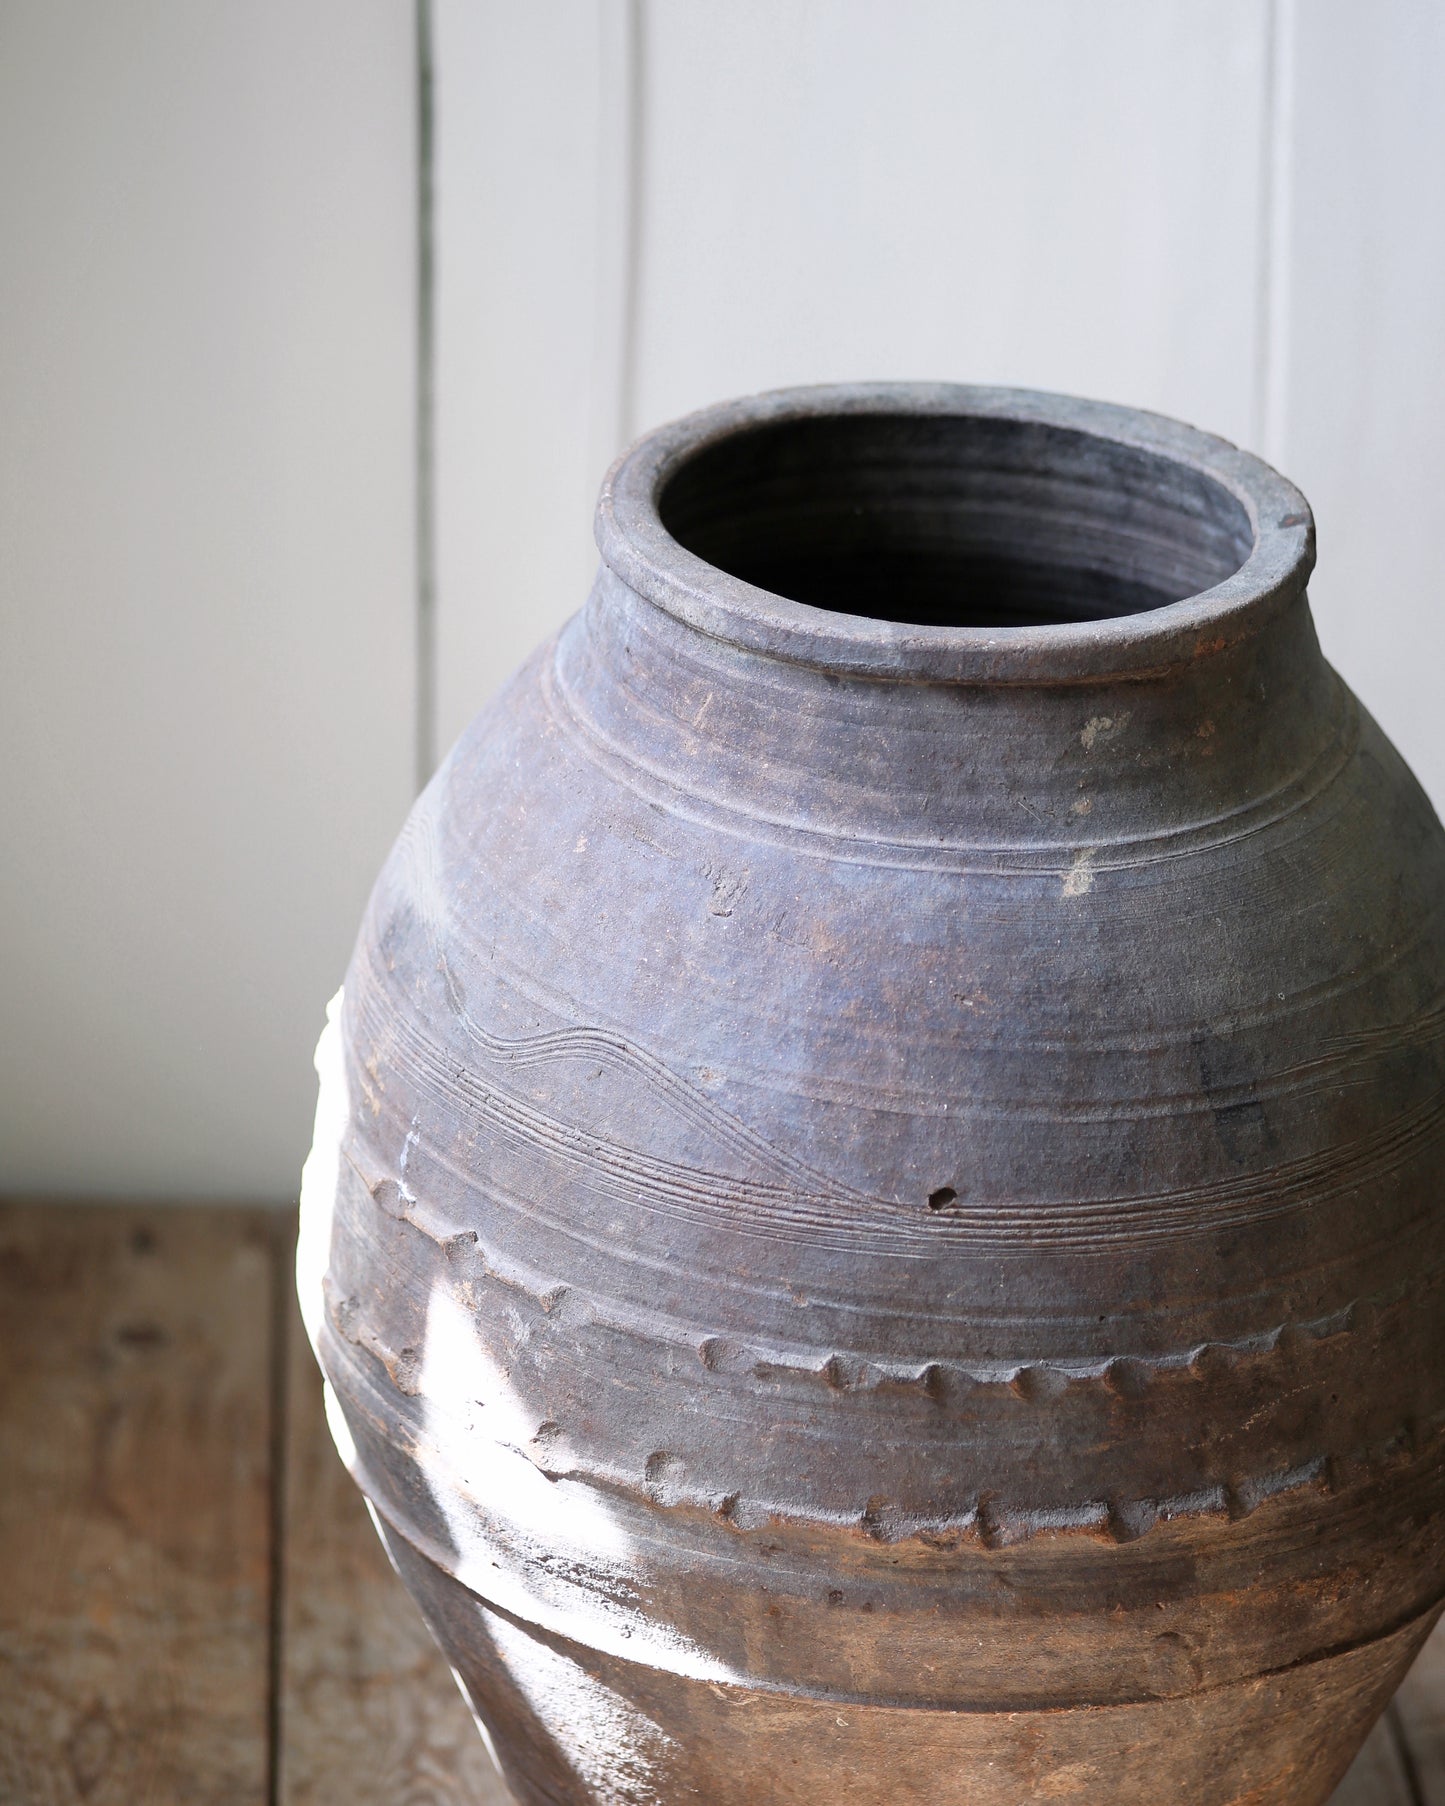 Vintage Turkish olive pot with original artisan decorative details on ribbed pot